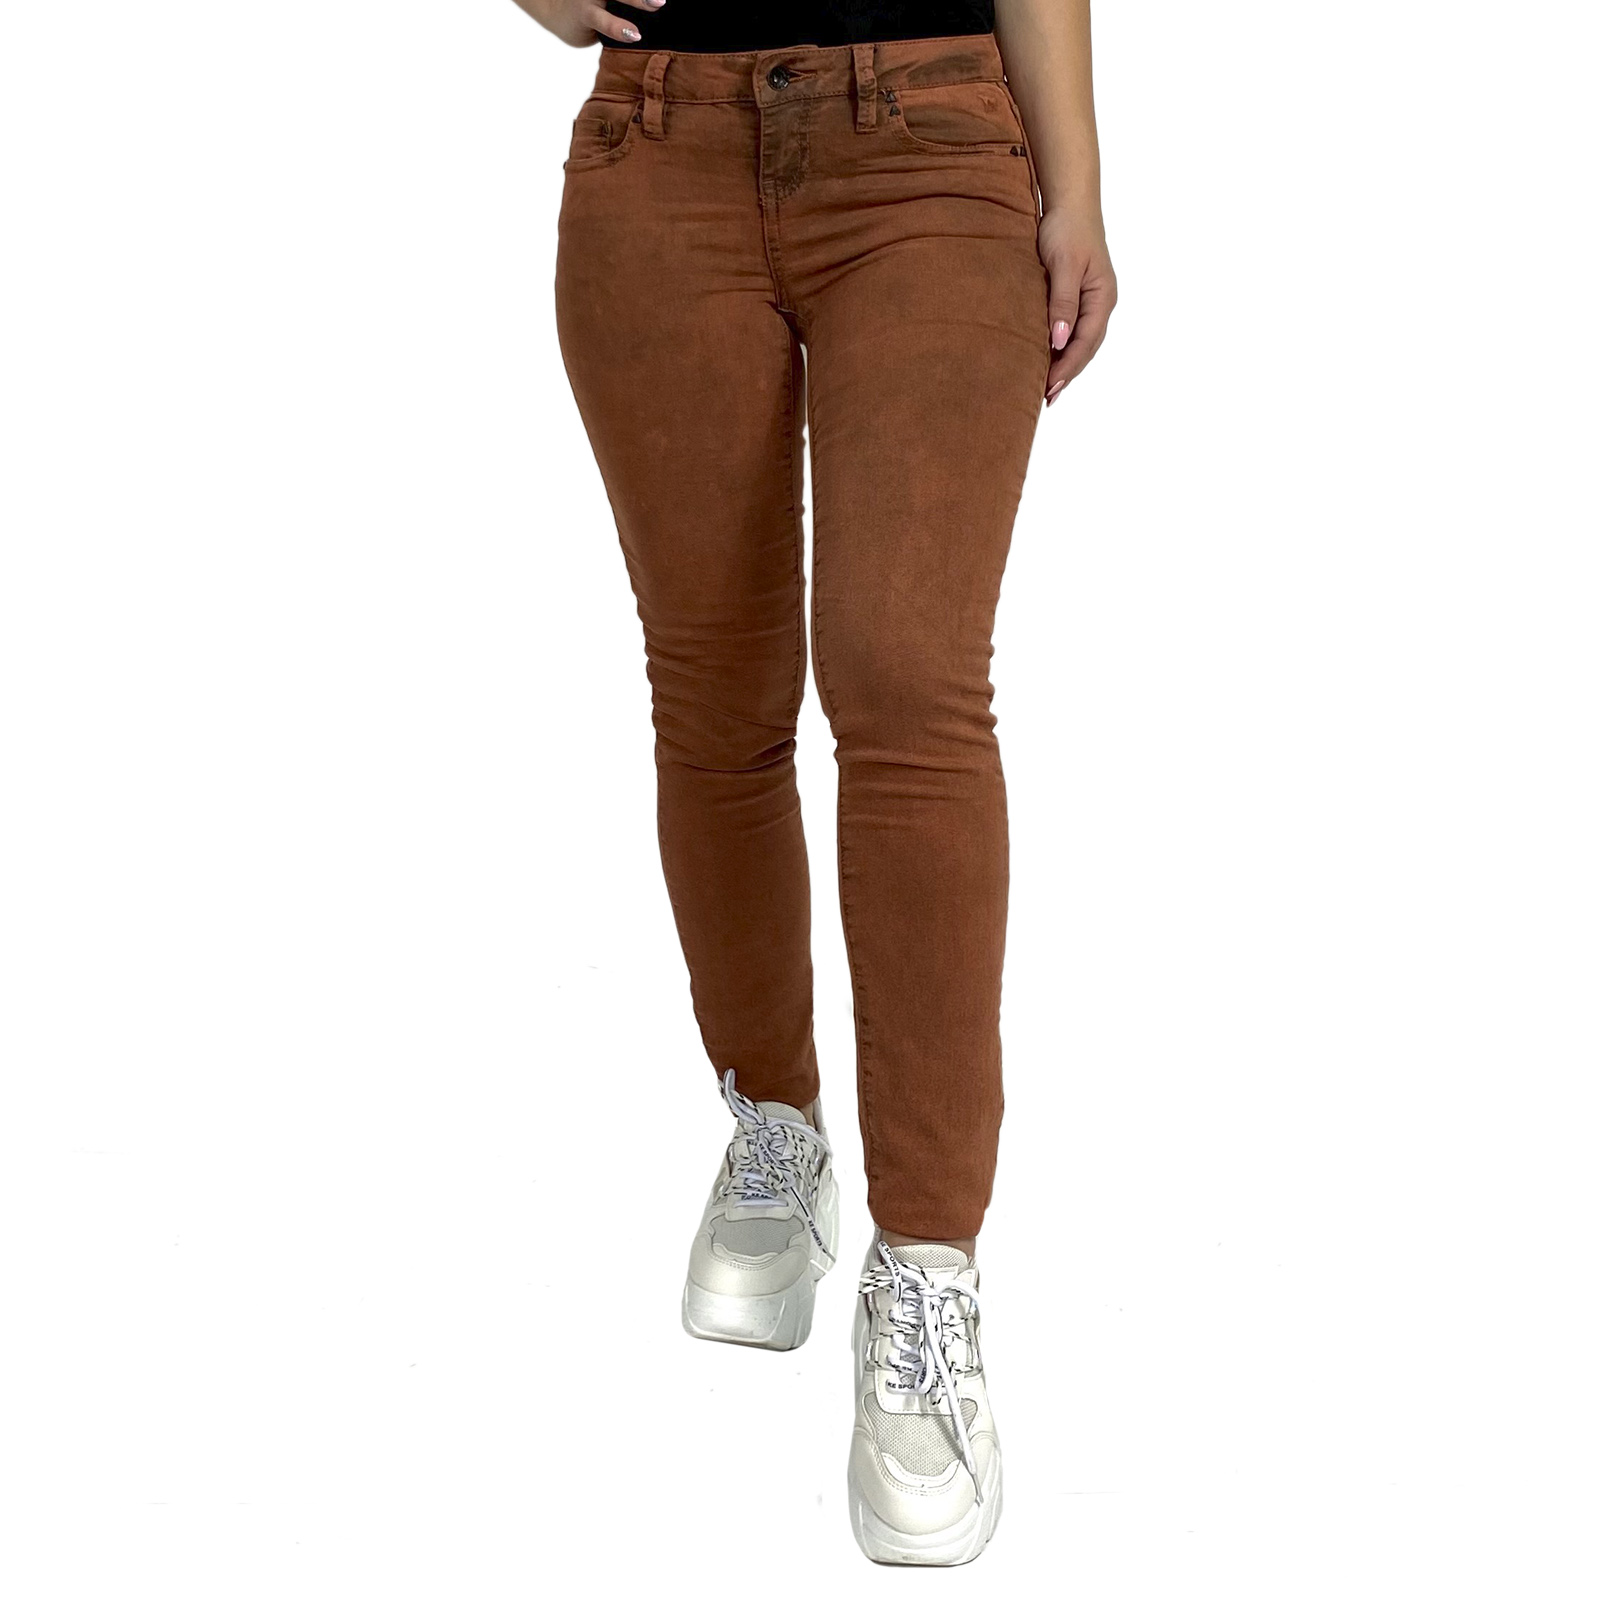 Купить в интернет магазине женские узкие джинсы скинни